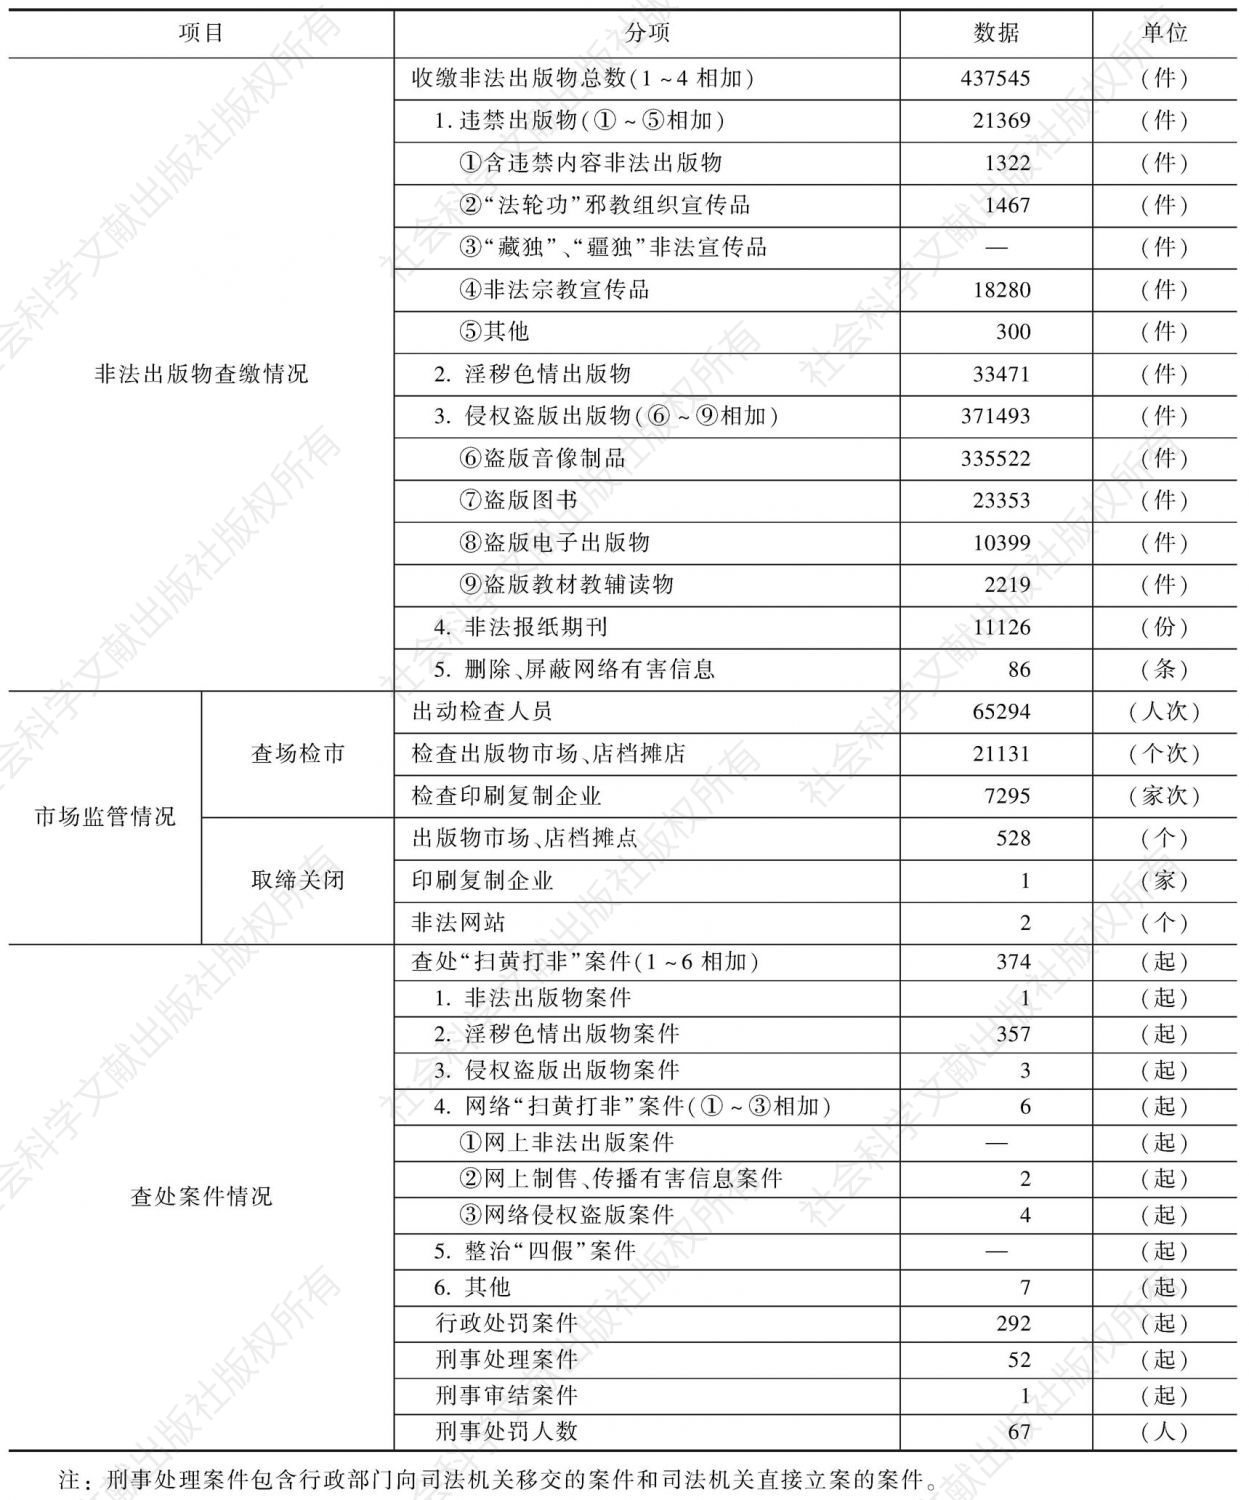 2010年天津市“扫黄打非”工作成果统计表